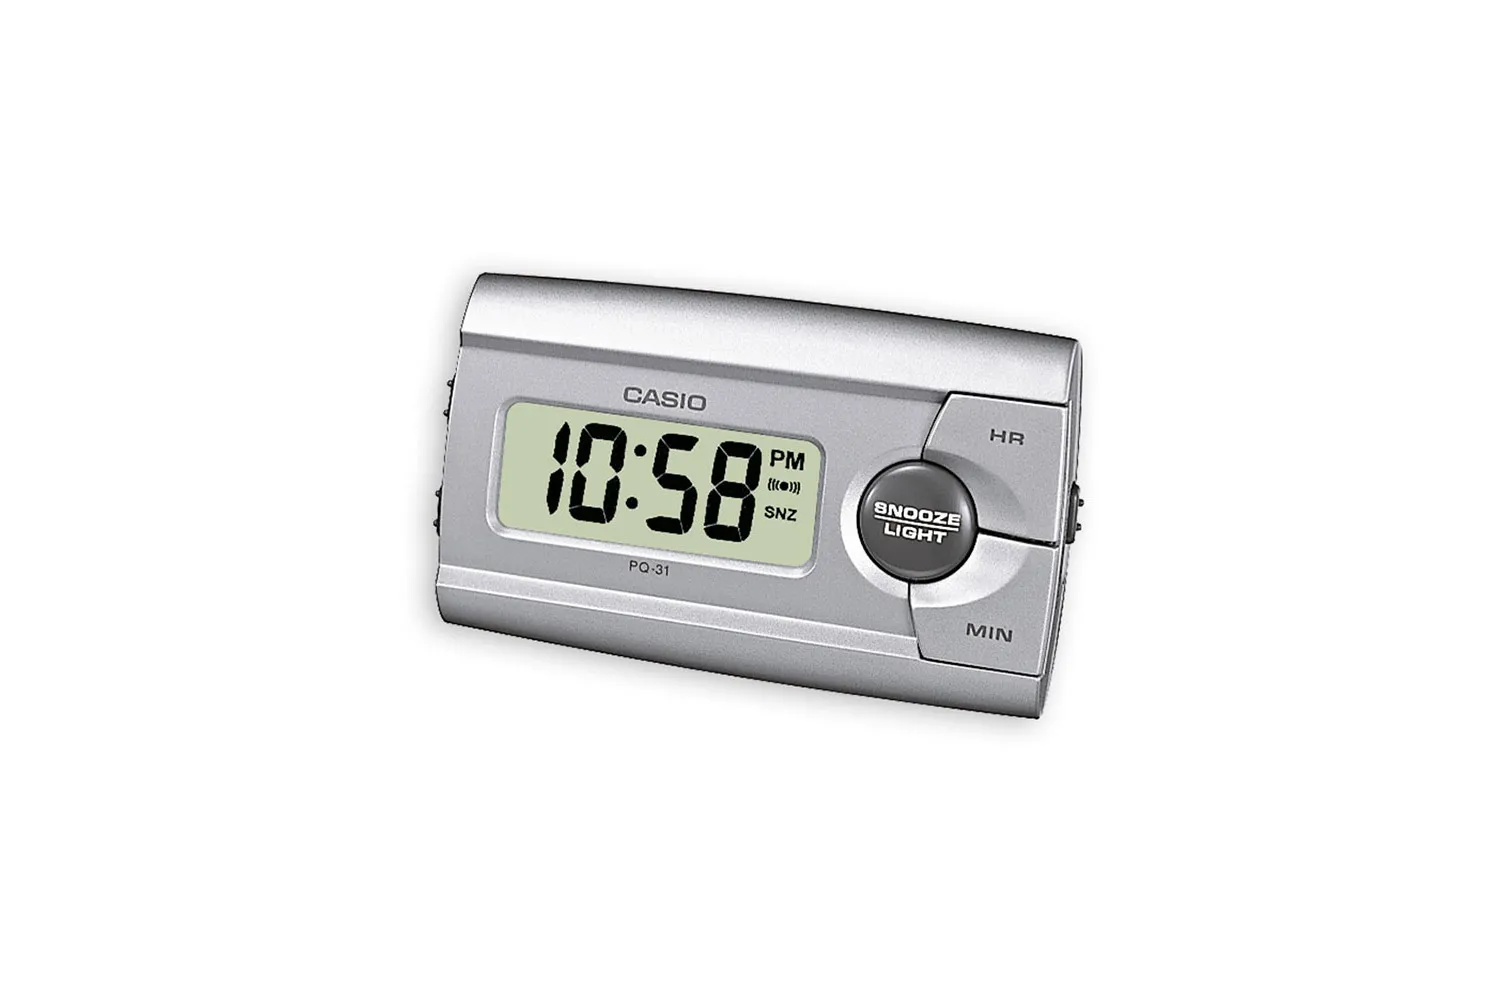 Reloj CASIO Clocks pq-31-8ef